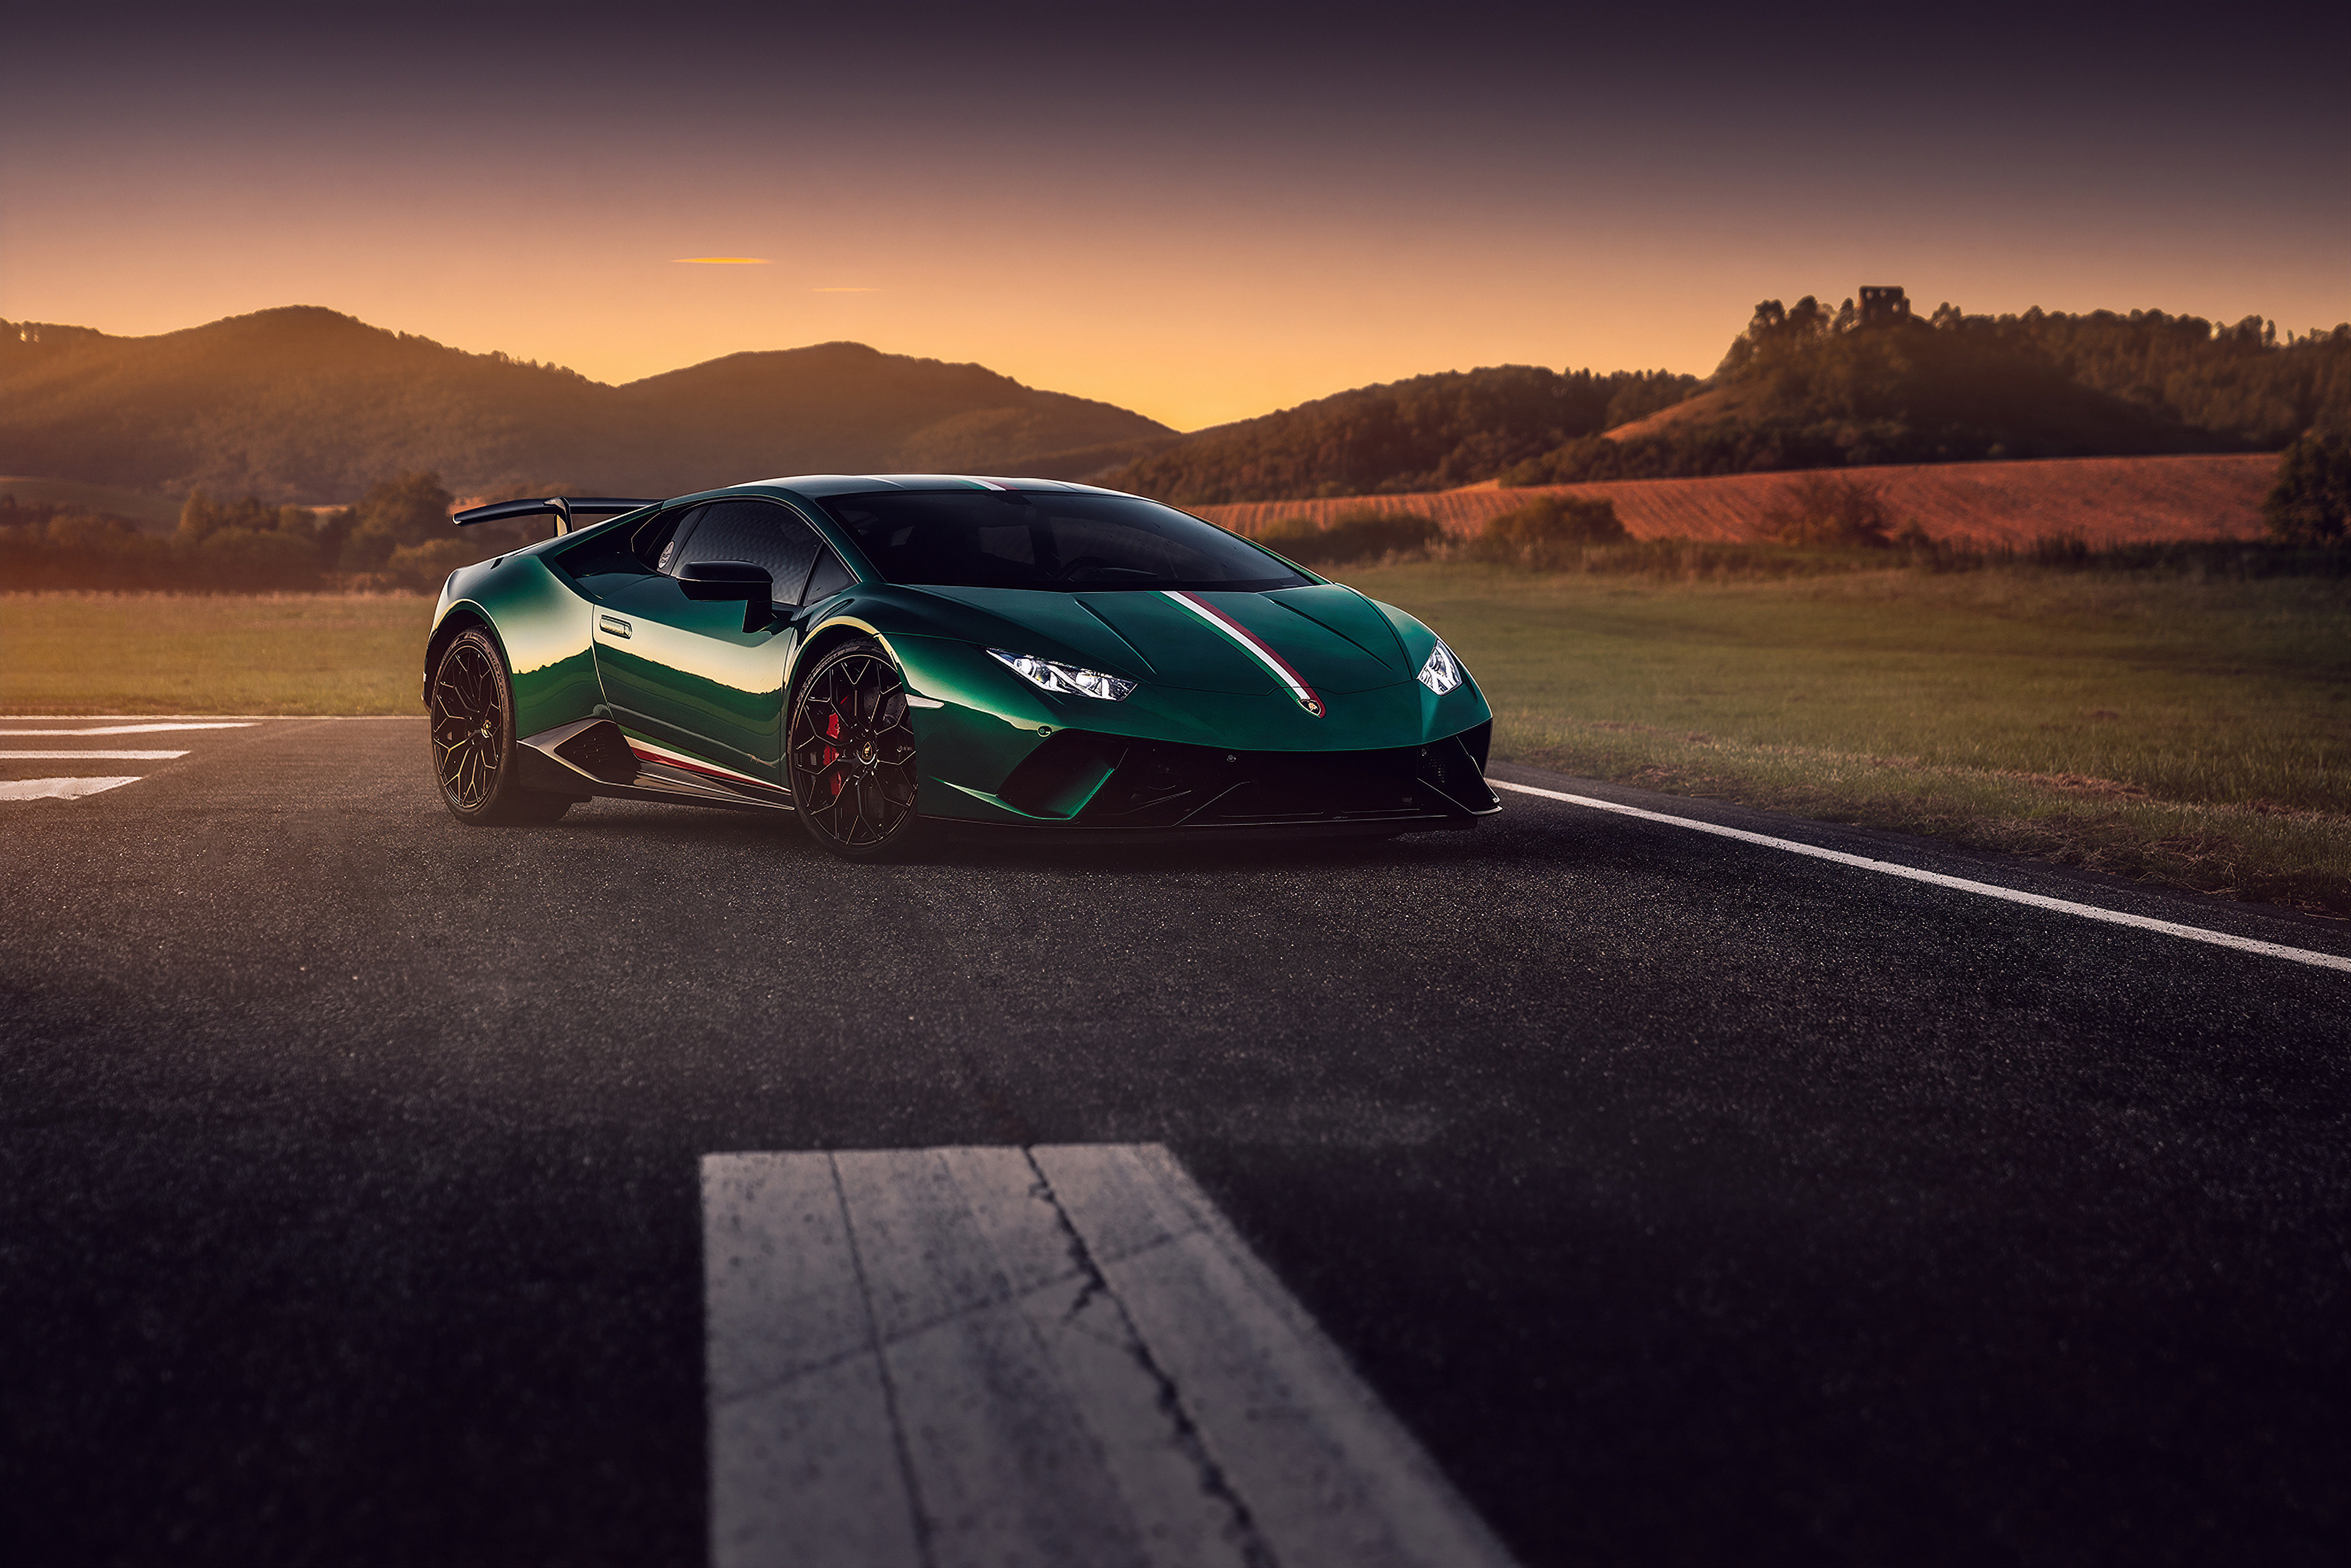 Green Lamborghini Huracan 4k 2019, HD Cars, 4k Wallpapers ...